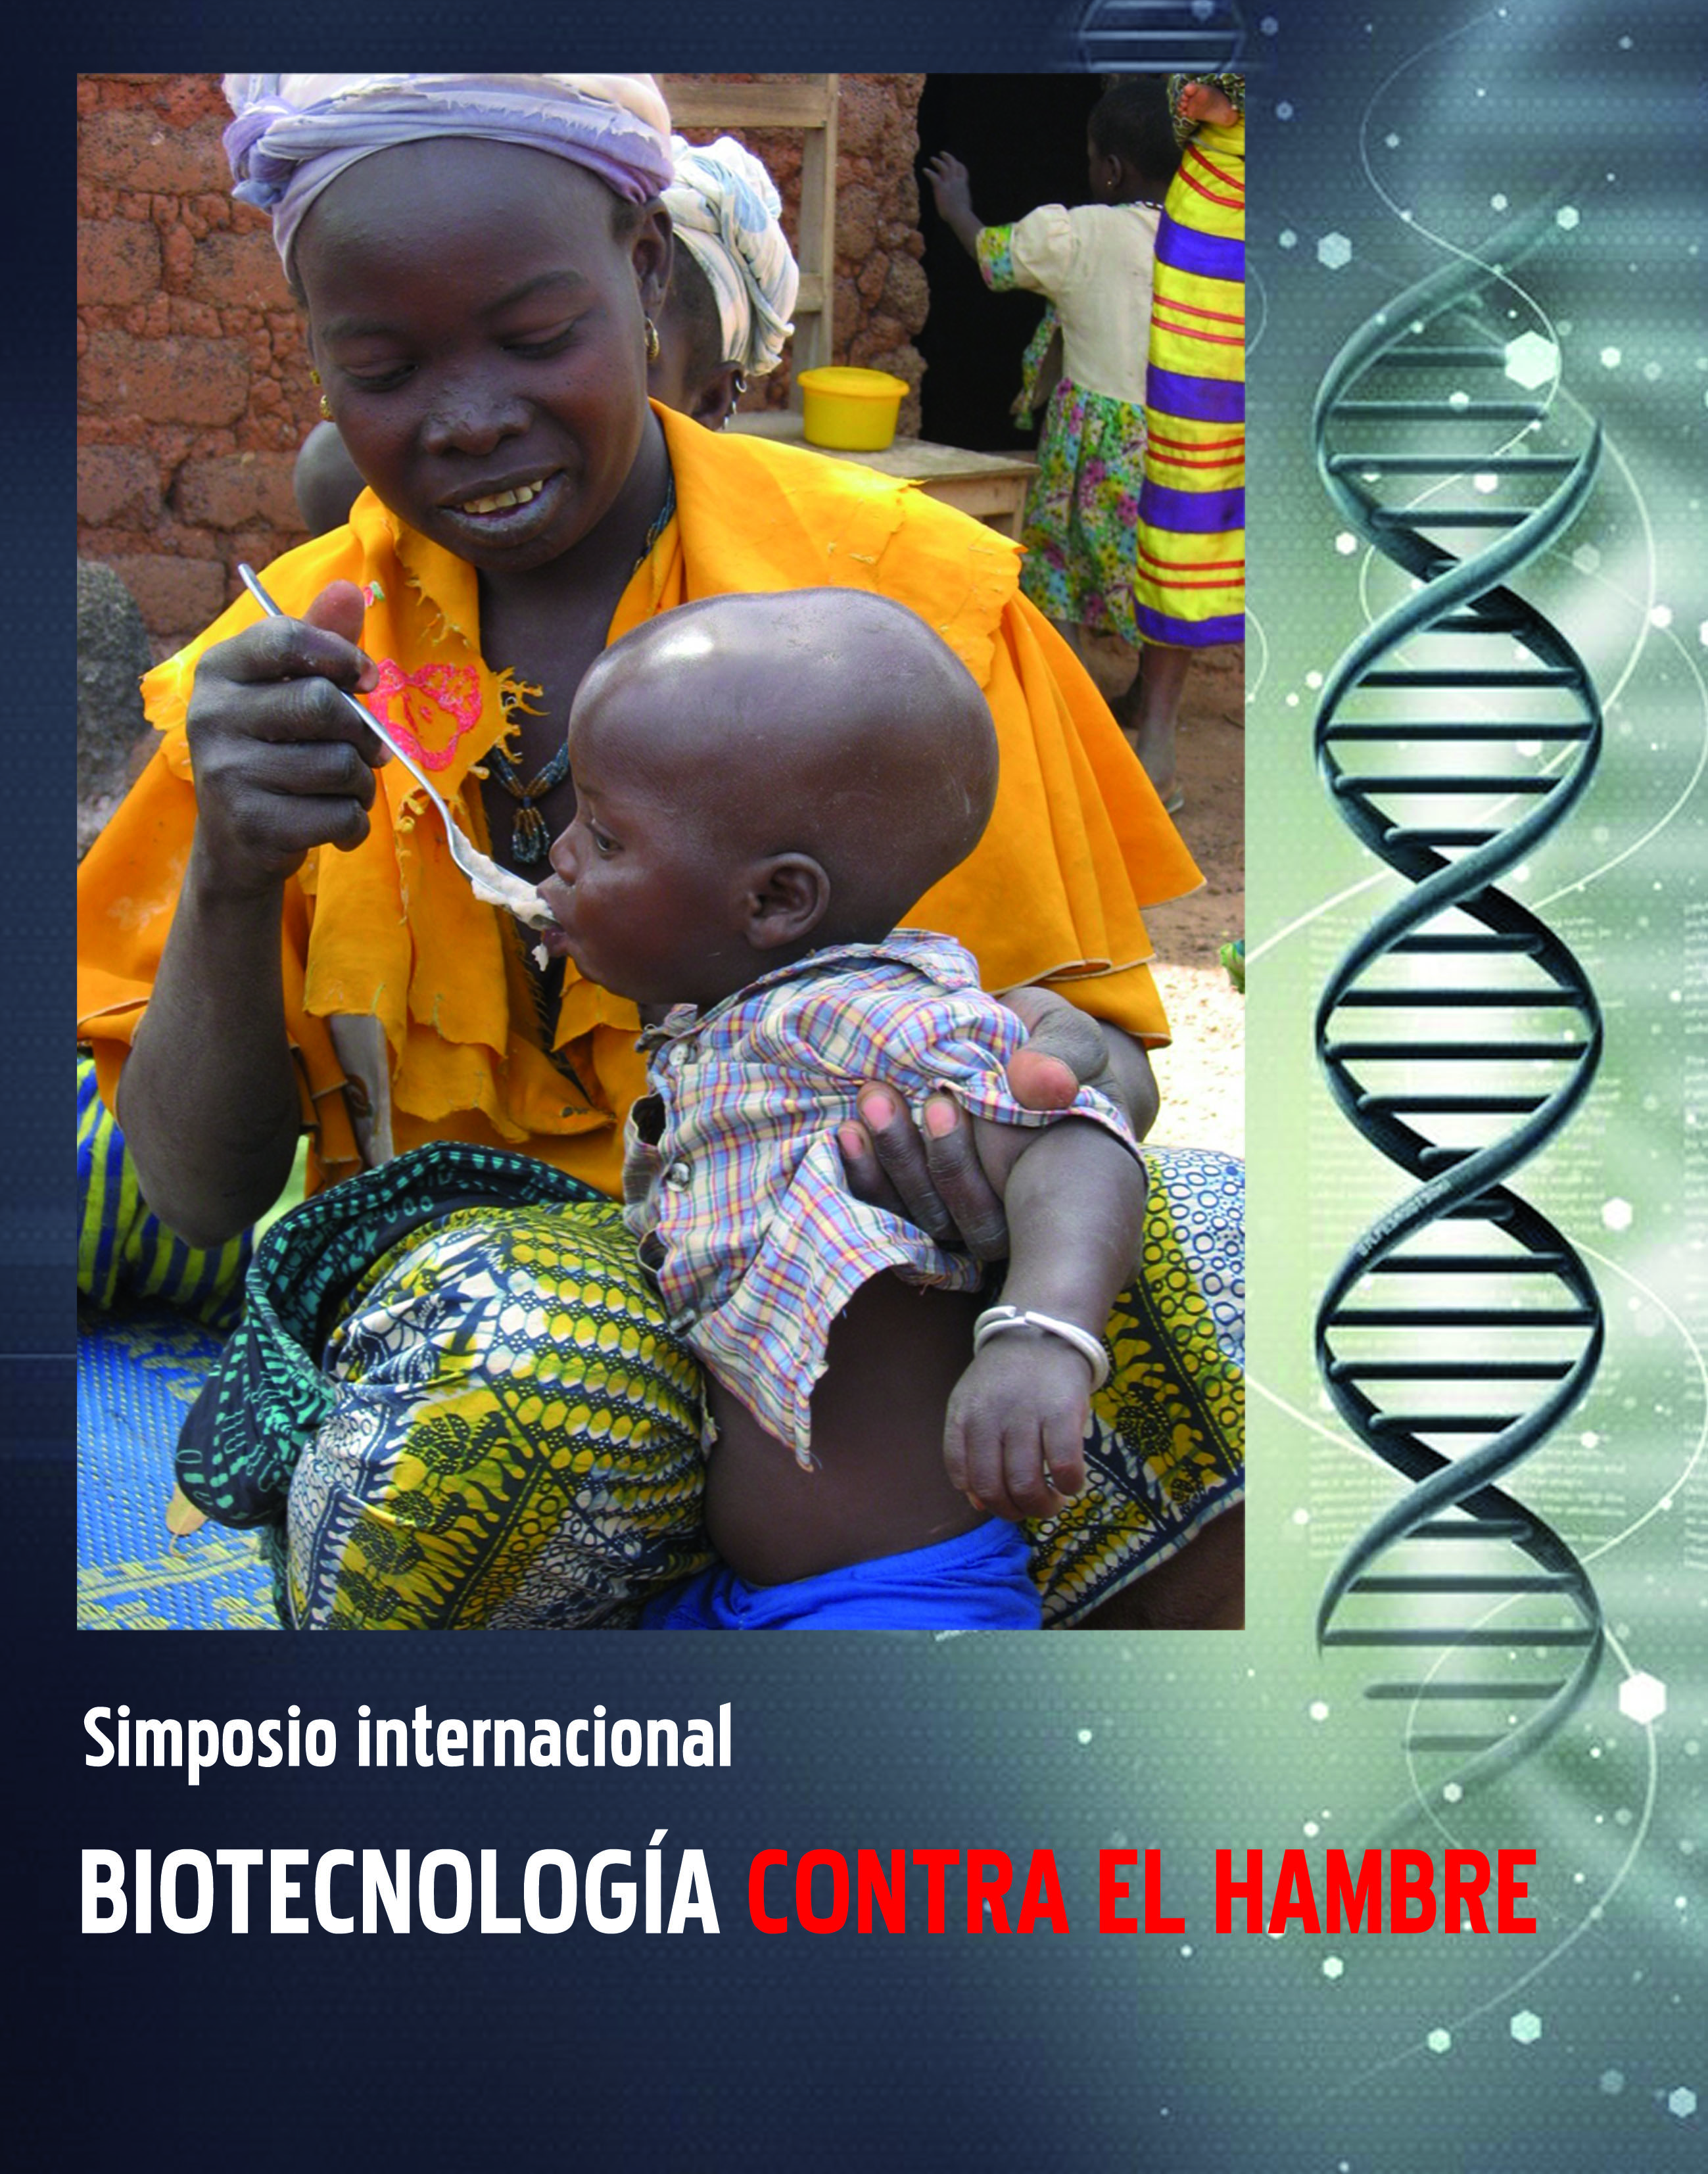 Simposio Internacional: Biotecnología contra el hambre